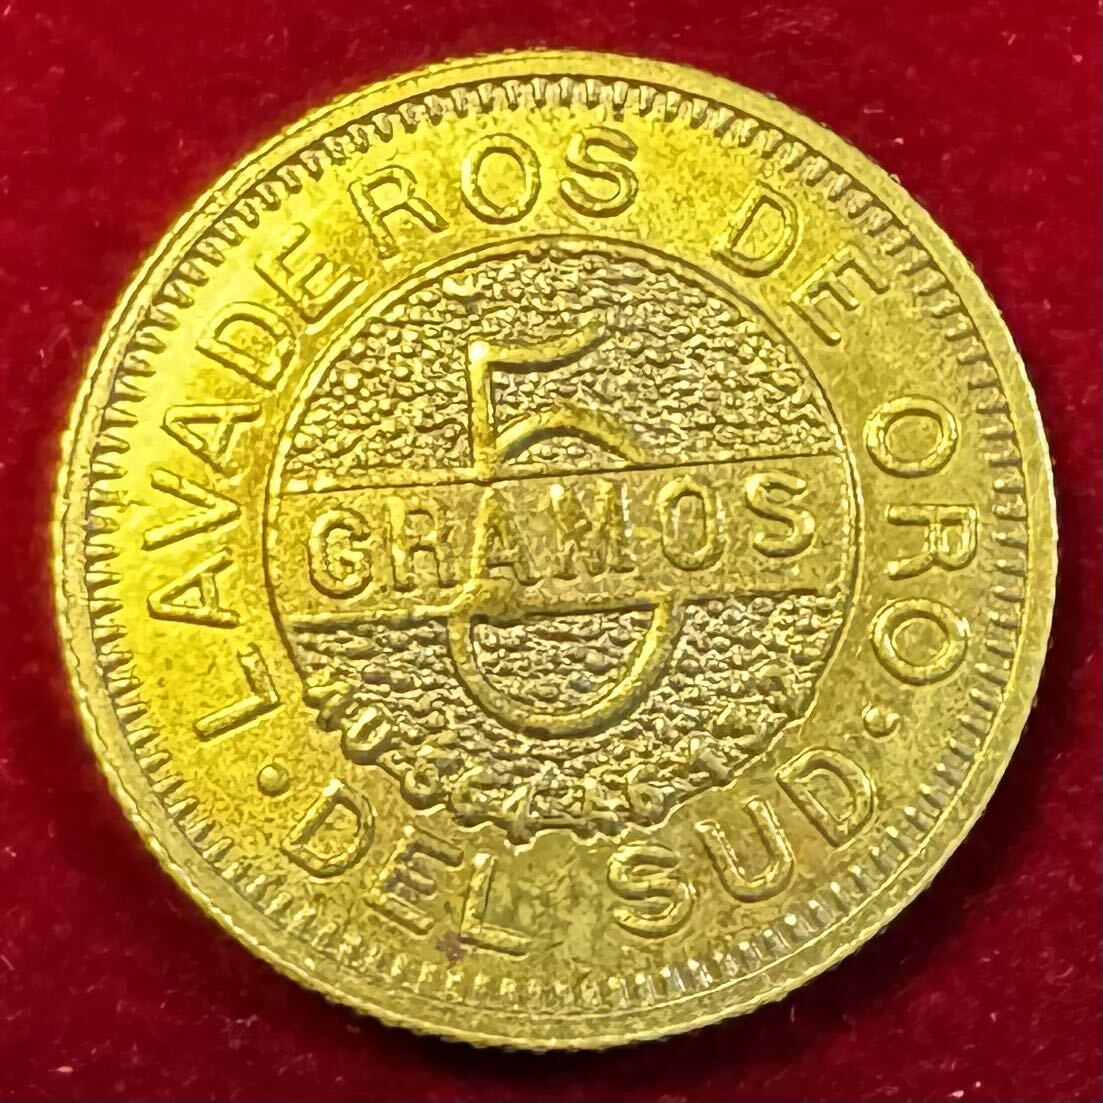 アルゼンチン 硬貨 古銭 ティエラ・デル・フエゴ 1889年 ピック ハンマー グラモス 鉱物土壌 記念幣 コイン 金貨 外国古銭 海外硬貨 の画像1